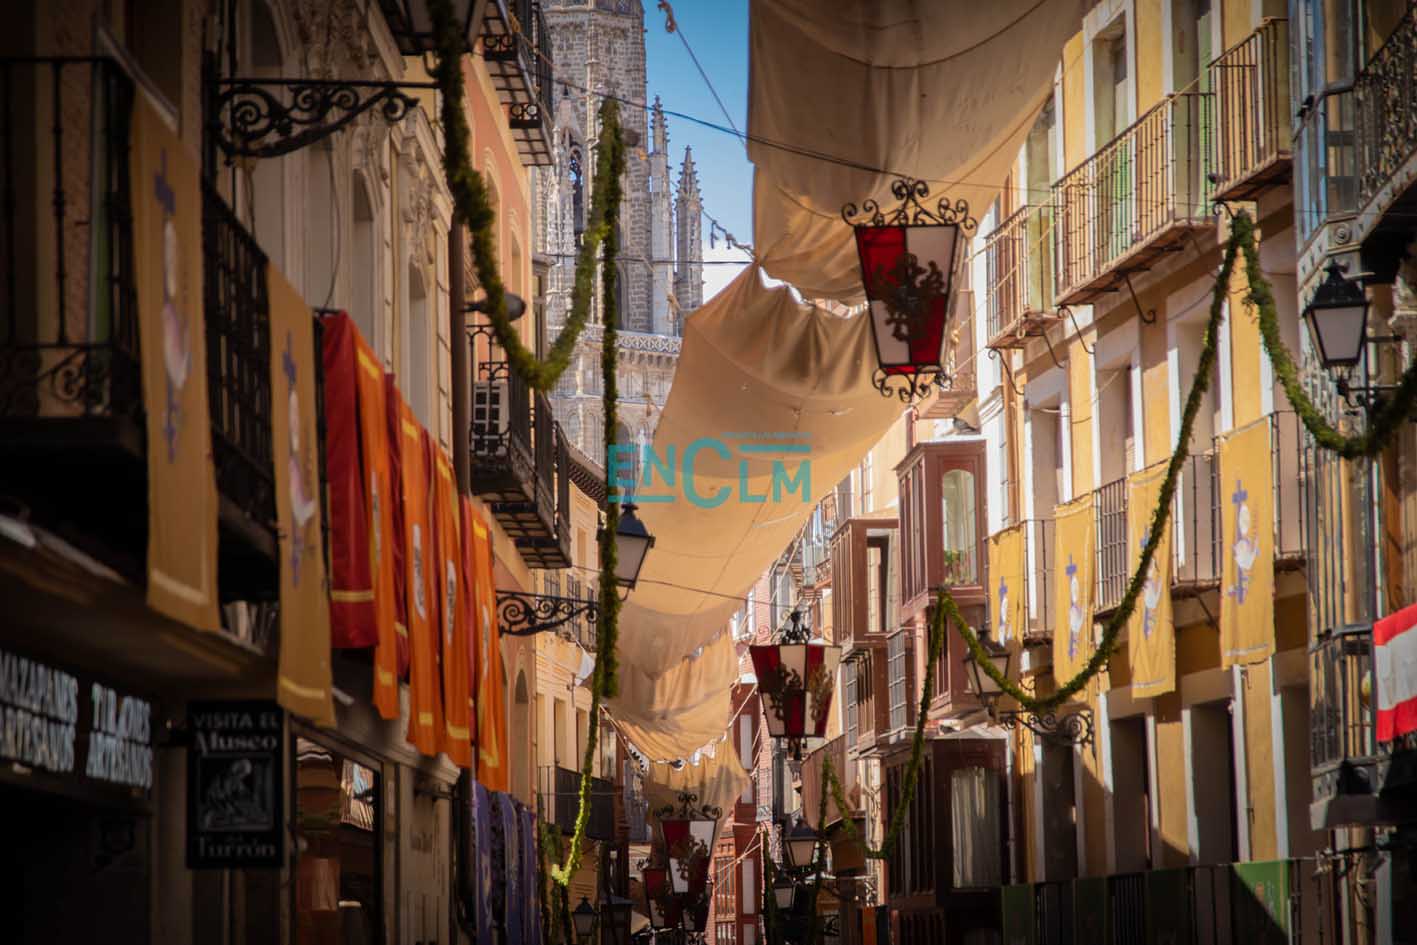 Las calles de Toledo, engalanadas para el Corpus Christi. Foto: Diego Langreo Serrano.